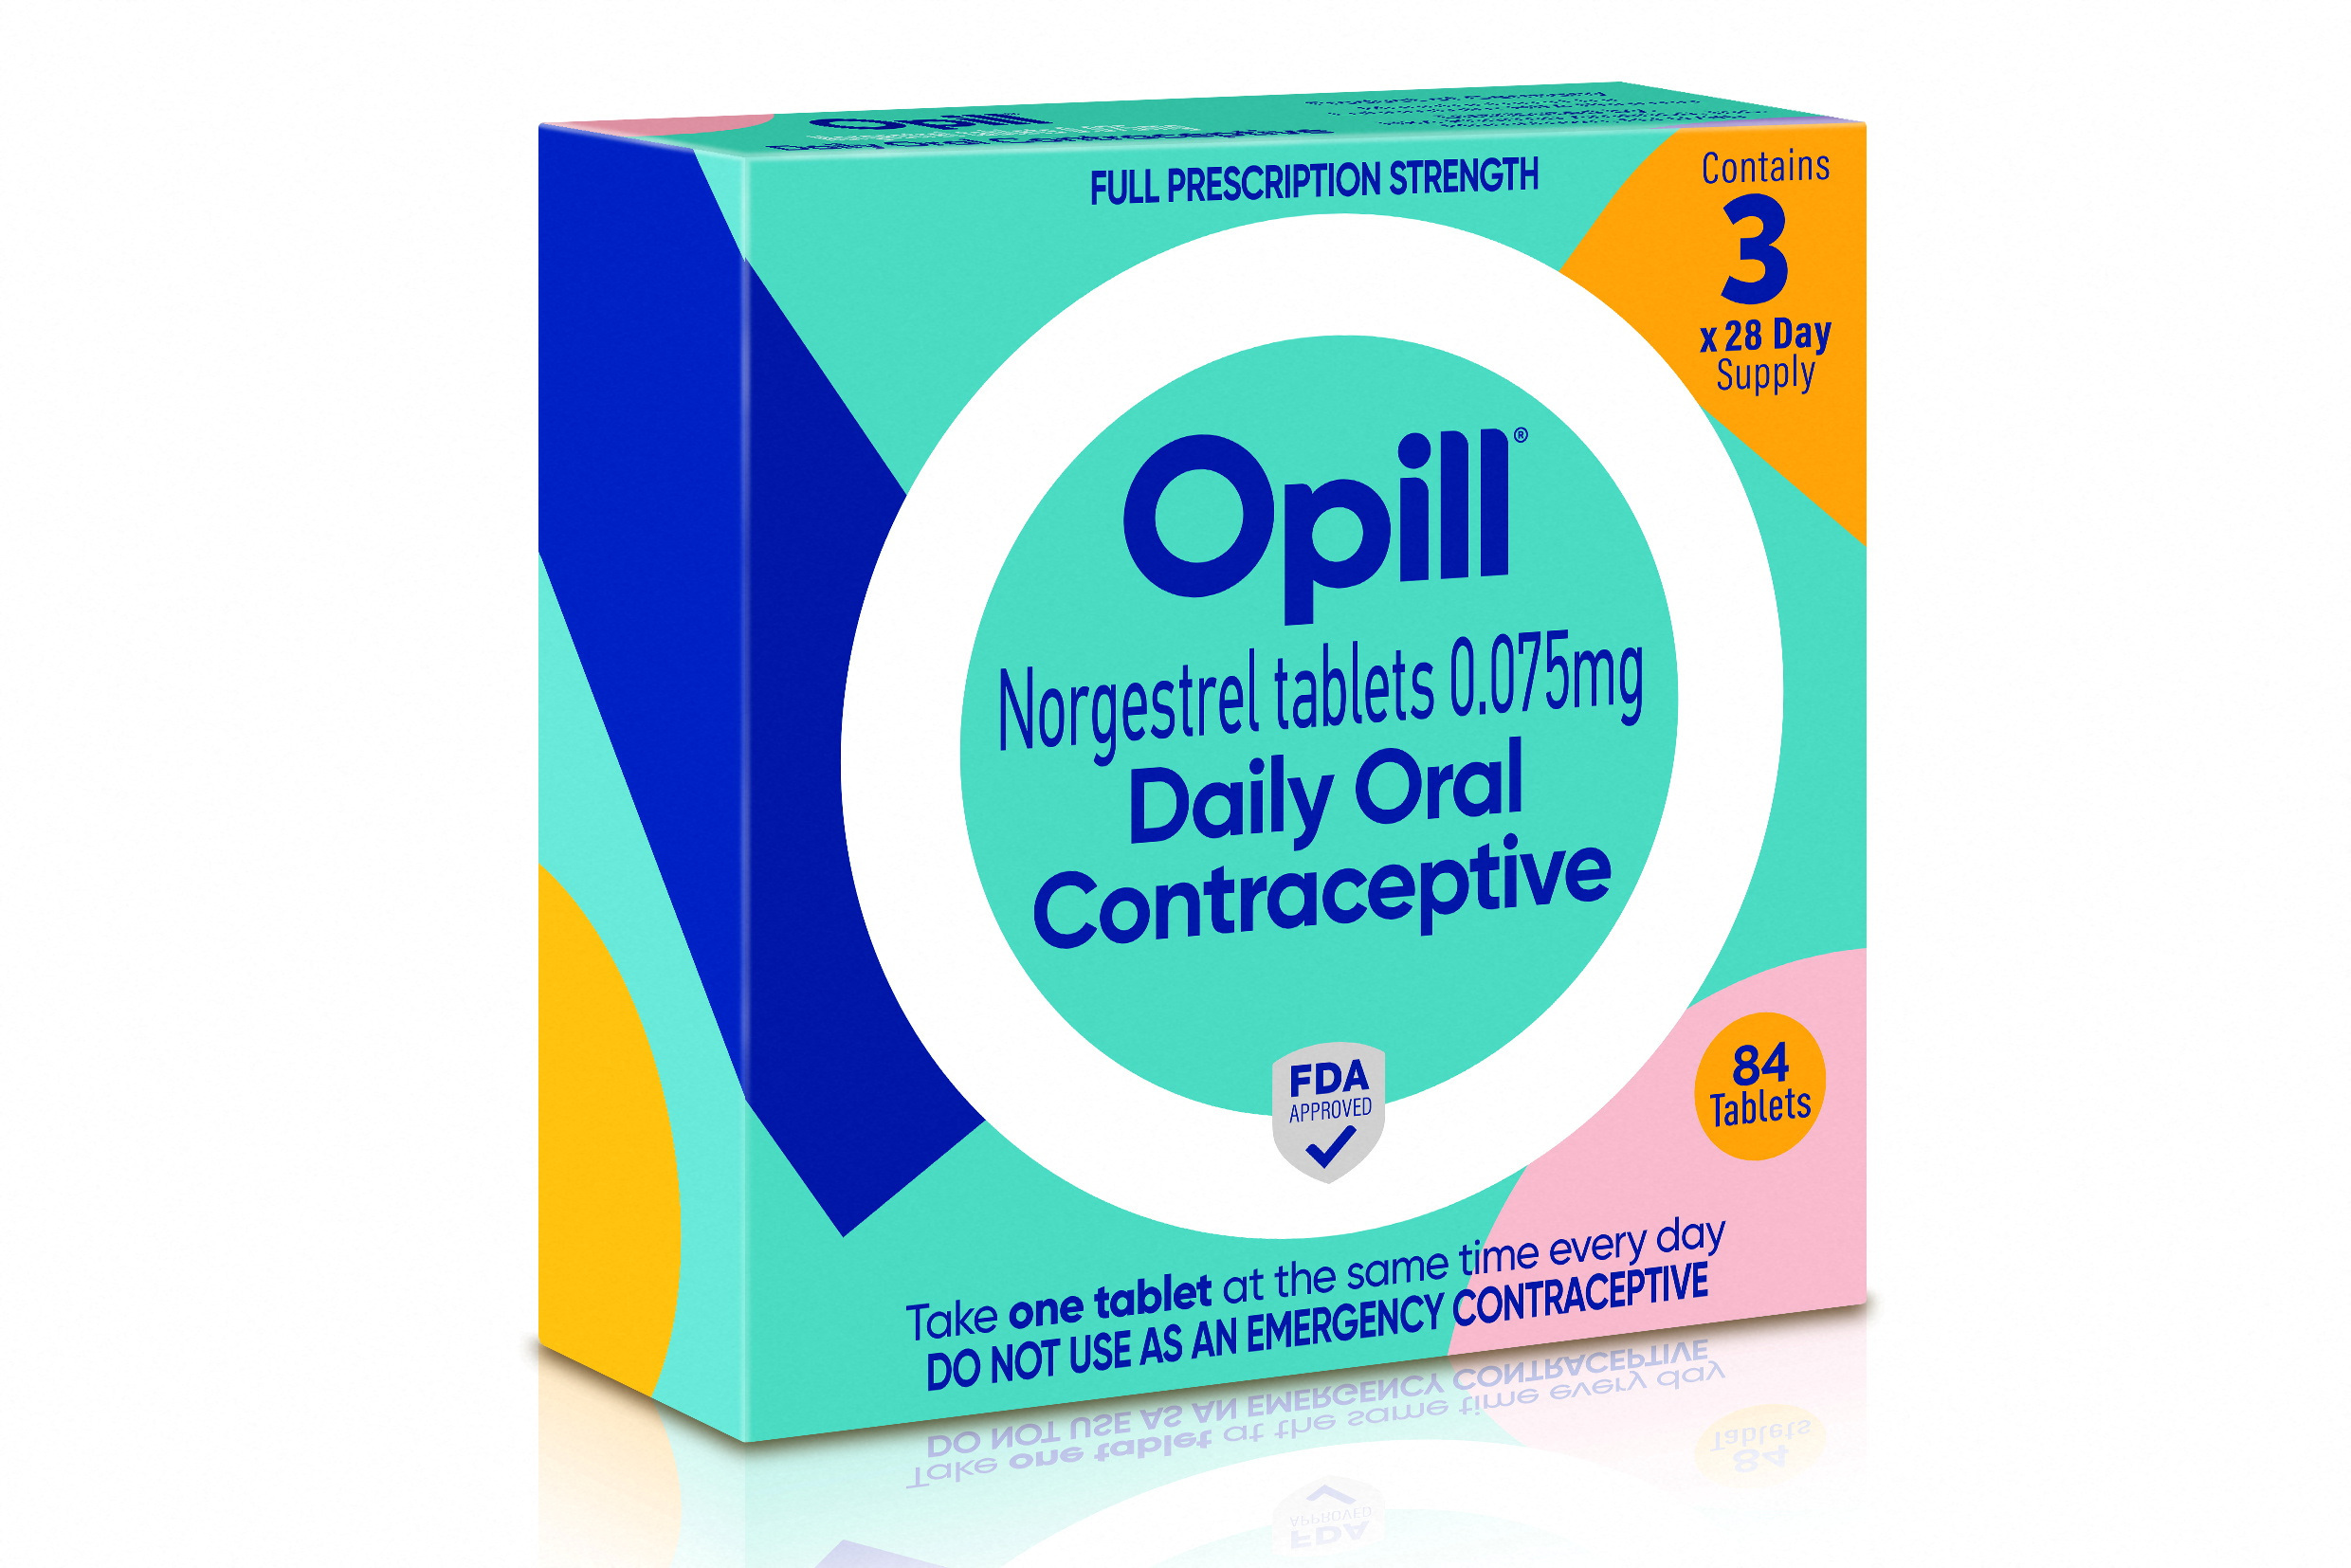 FDA Approves First Nonprescription Daily Oral Contraceptive